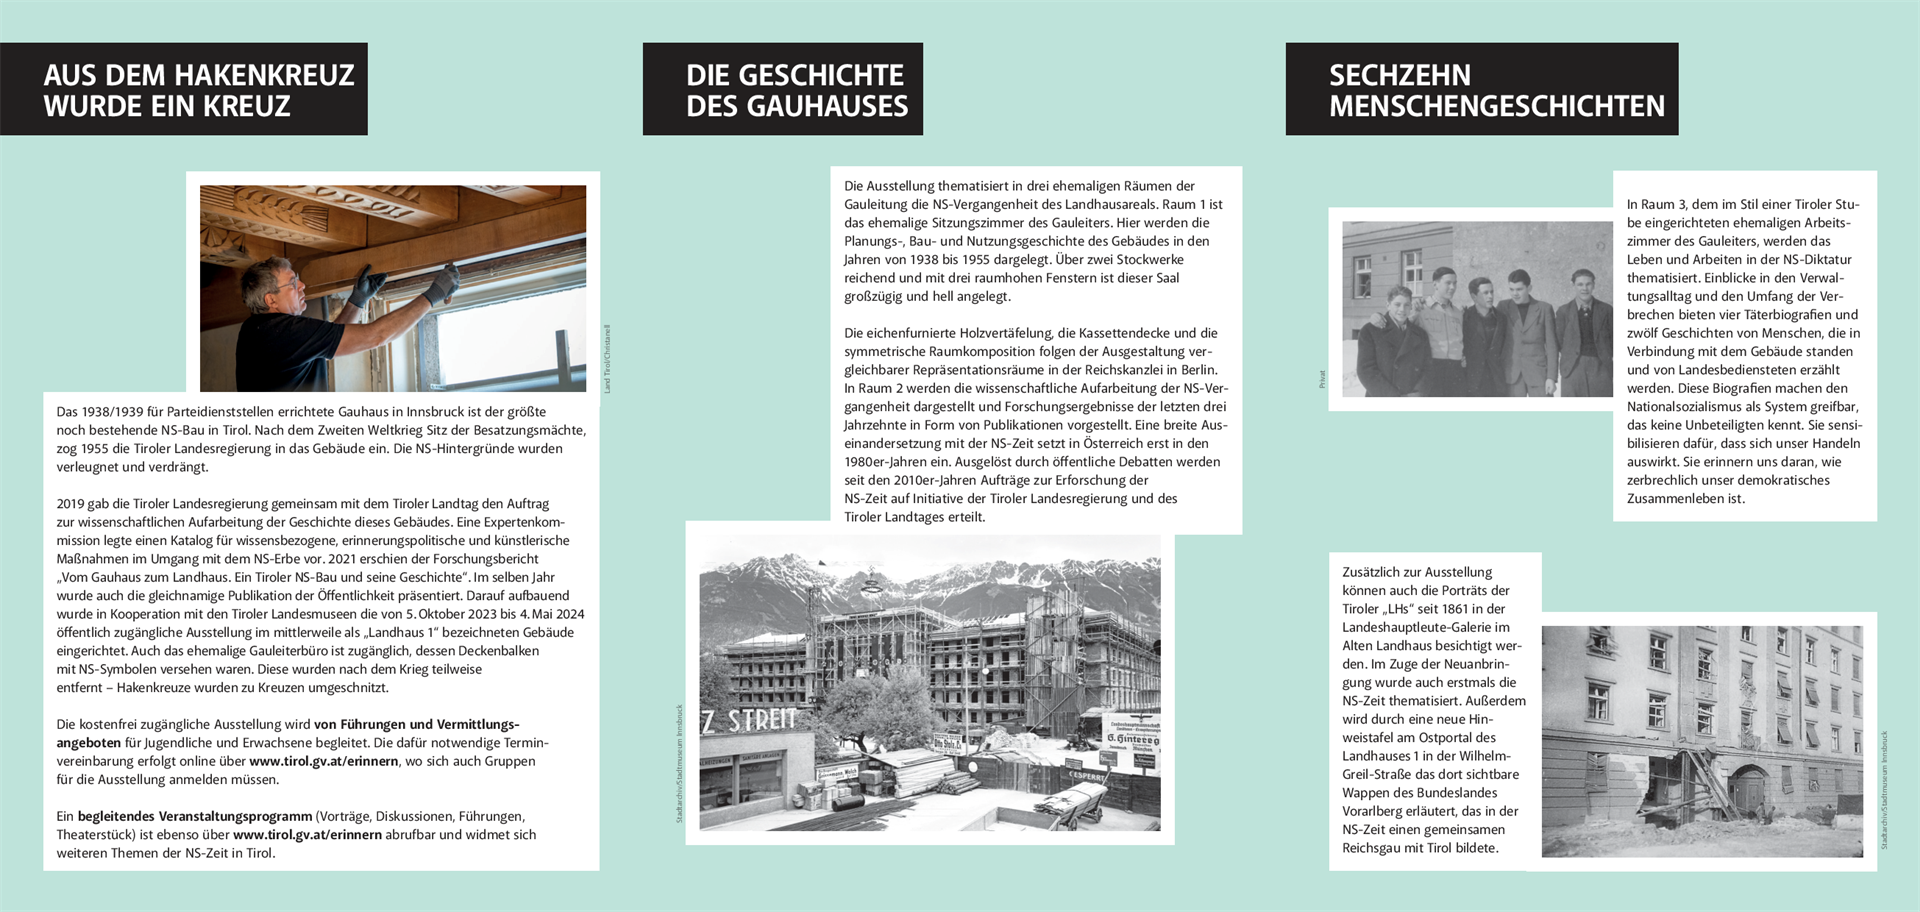 Info Ausstellung "Vom Gauhaus zum Landhaus"